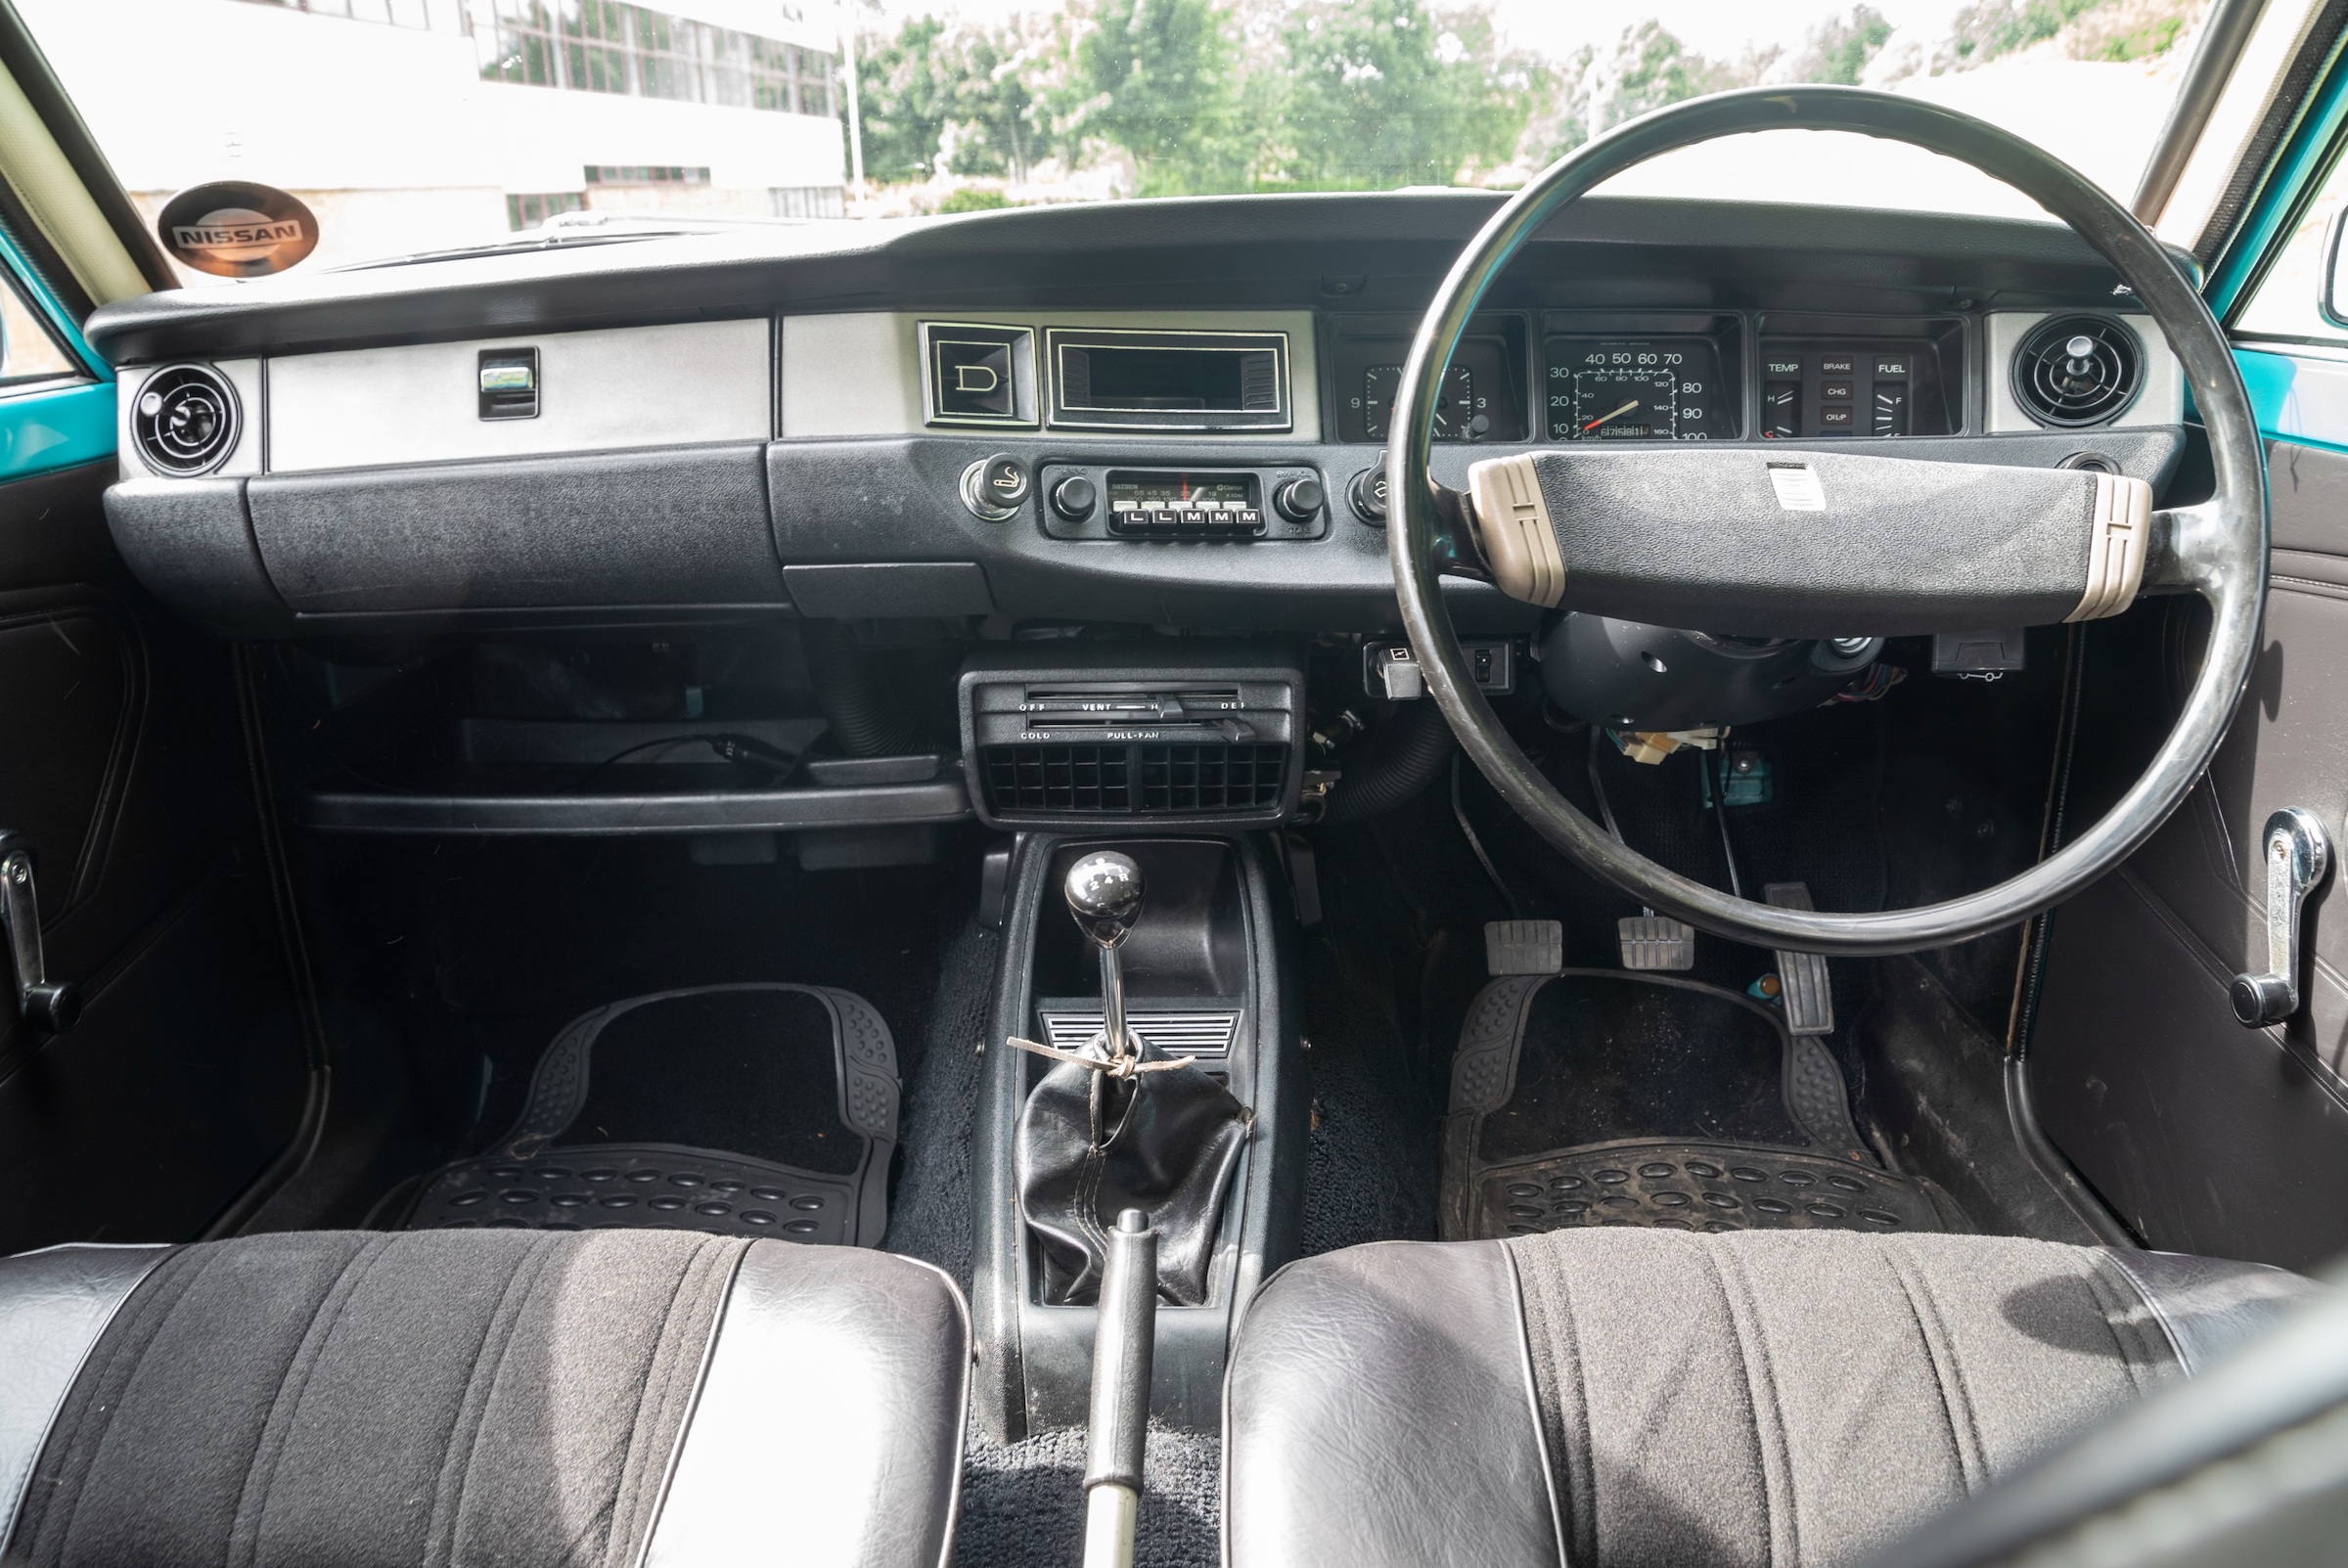 1978 Datsun 120Y interior